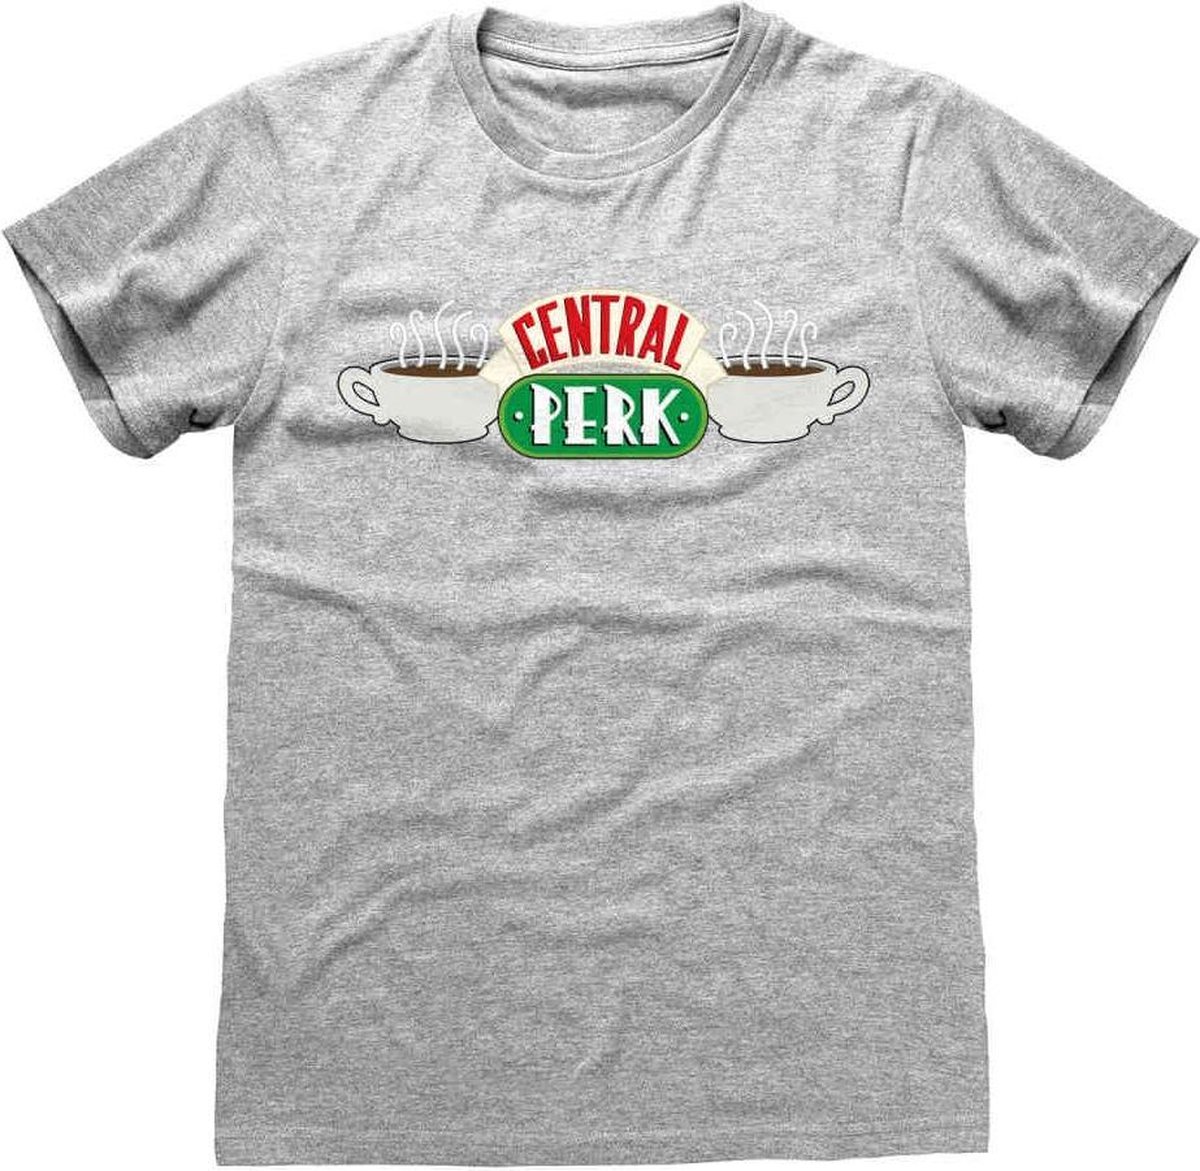 Friends - Central Perk T-Shirt Grijs